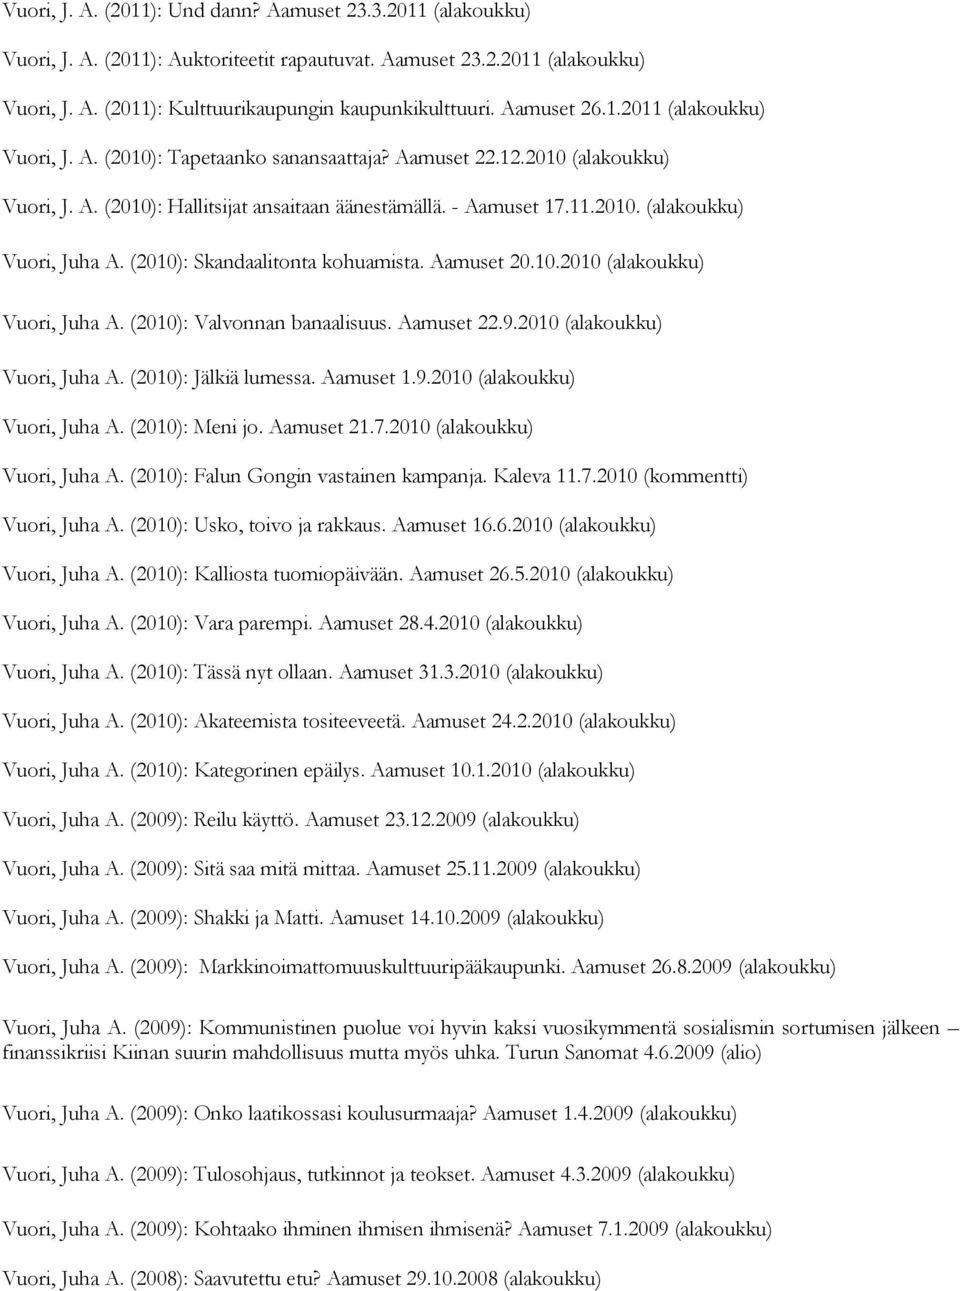 (2010): Skandaalitonta kohuamista. Aamuset 20.10.2010 (alakoukku) Vuori, Juha A. (2010): Valvonnan banaalisuus. Aamuset 22.9.2010 (alakoukku) Vuori, Juha A. (2010): Jälkiä lumessa. Aamuset 1.9.2010 (alakoukku) Vuori, Juha A. (2010): Meni jo.